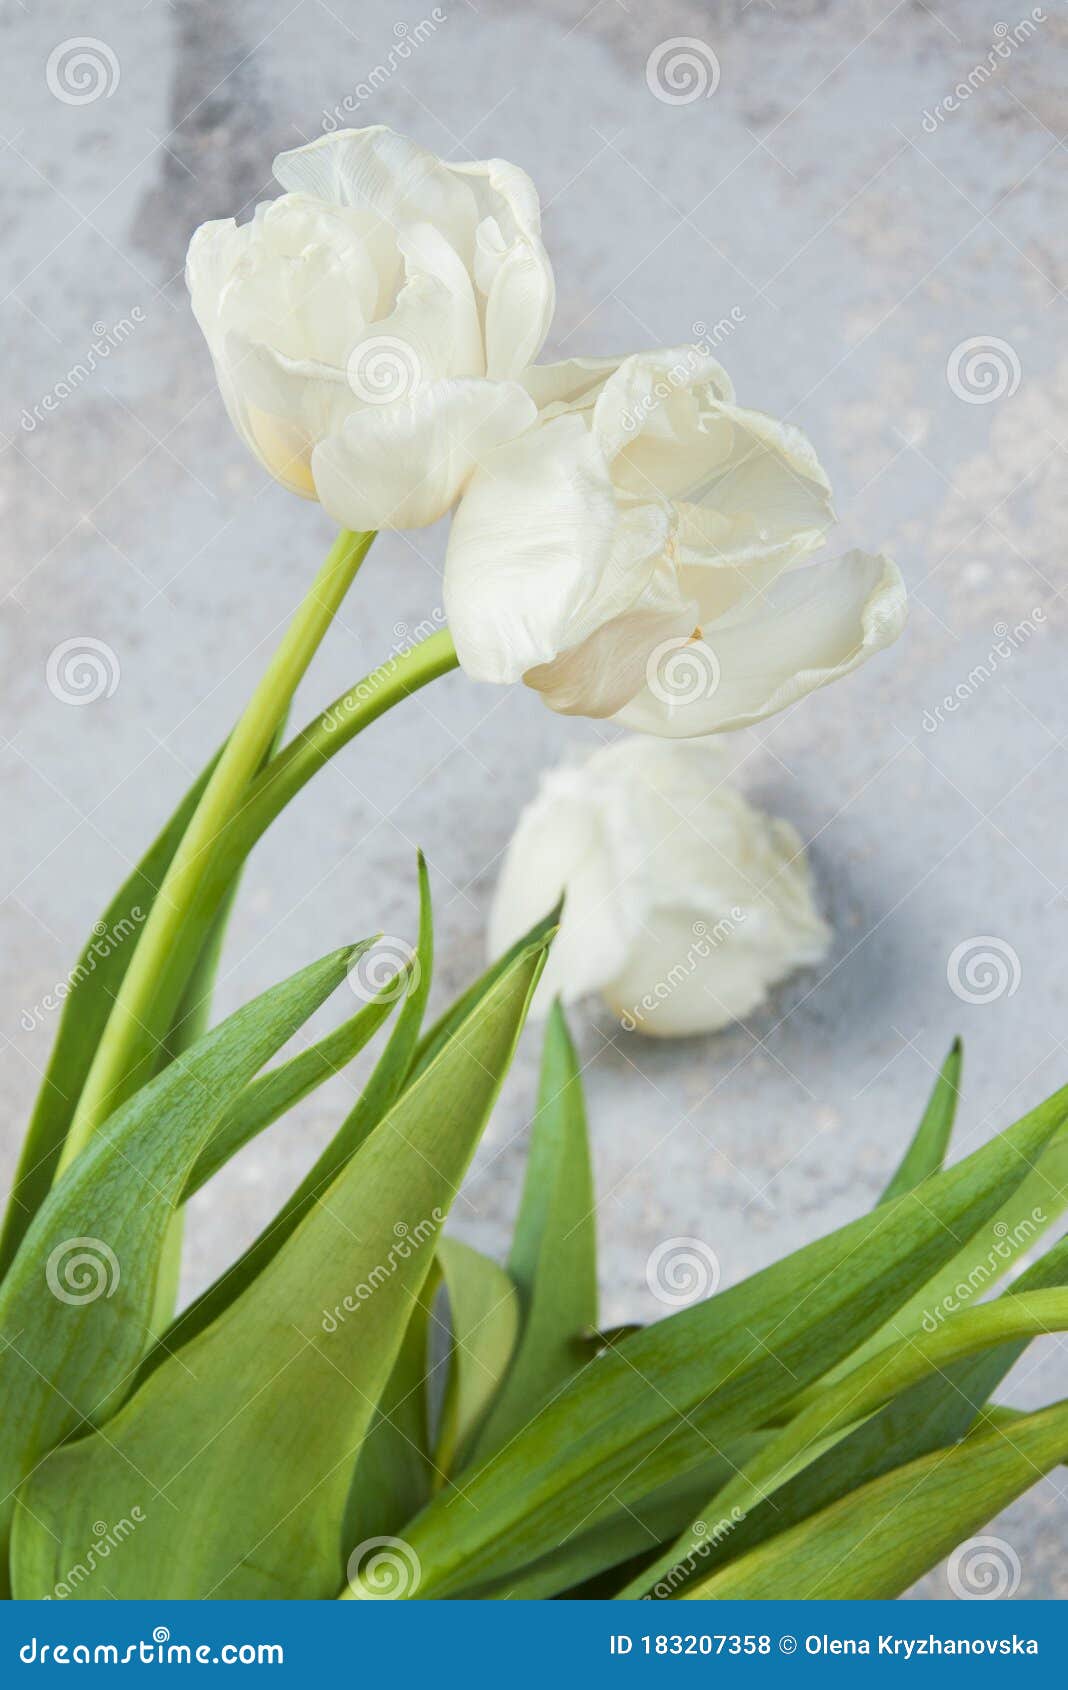 white tulips in old copper vase